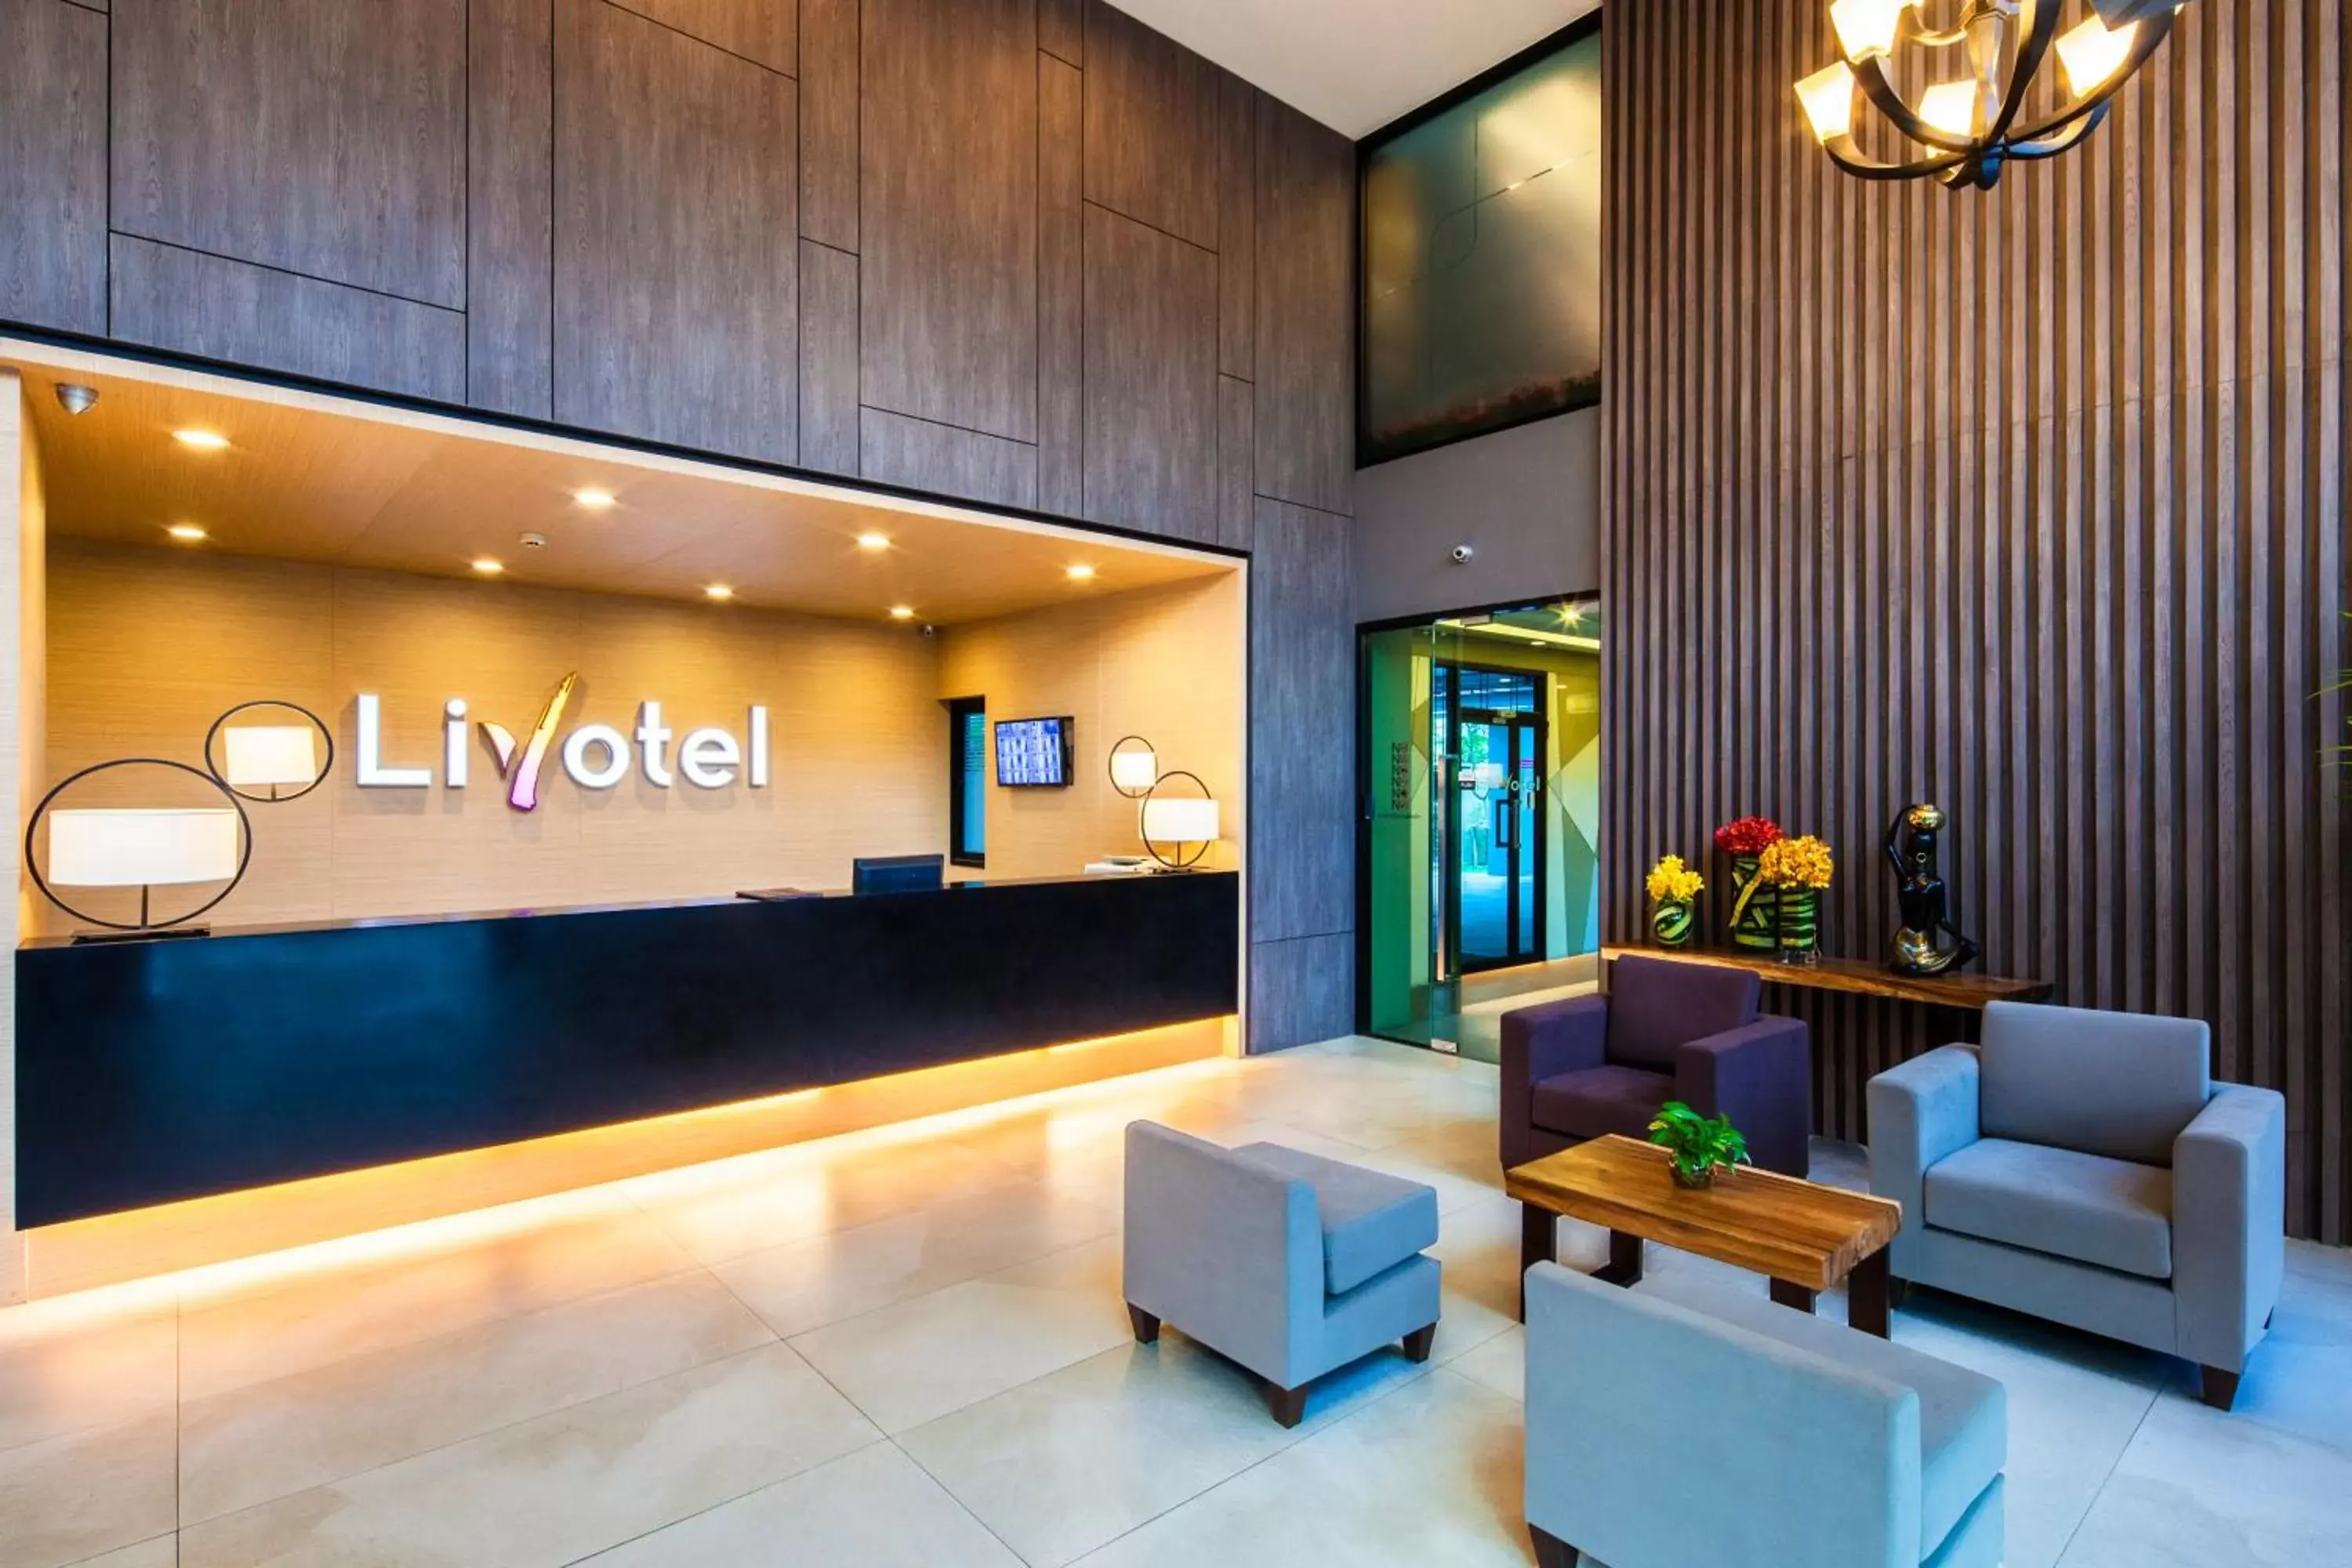 Lobby or reception, Lobby/Reception in Livotel Hotel Lat Phrao Bangkok